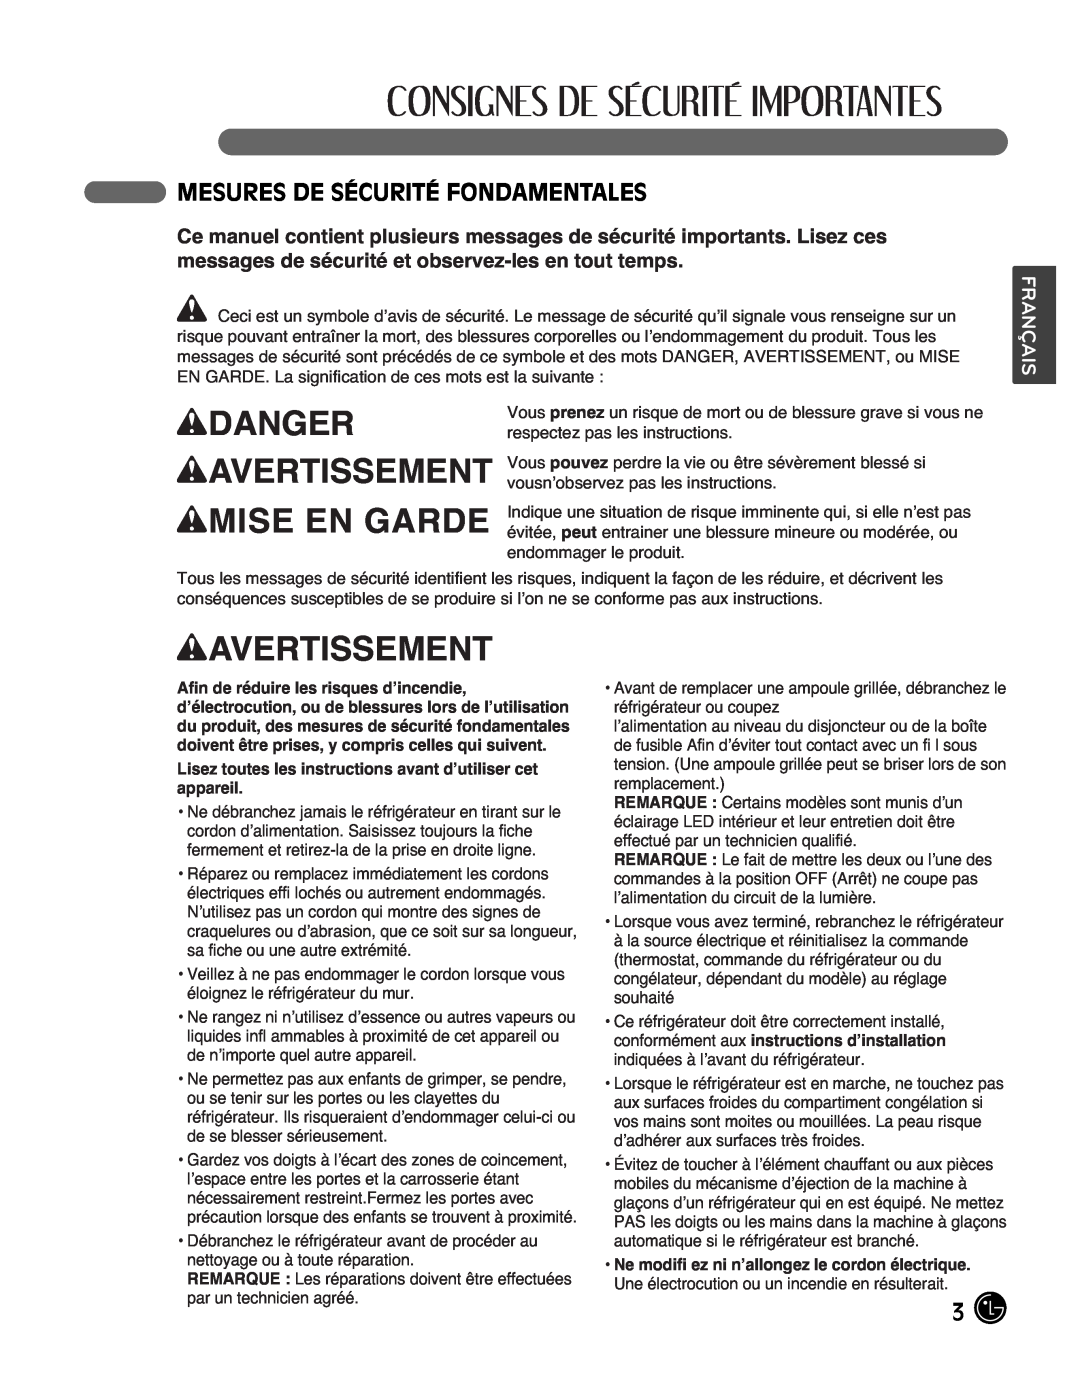 LG Electronics LMX25988ST owner manual wDANGER wAVERTISSEMENT wMISE EN GARDE, Mesures De Sécurité Fondamentales, Français 